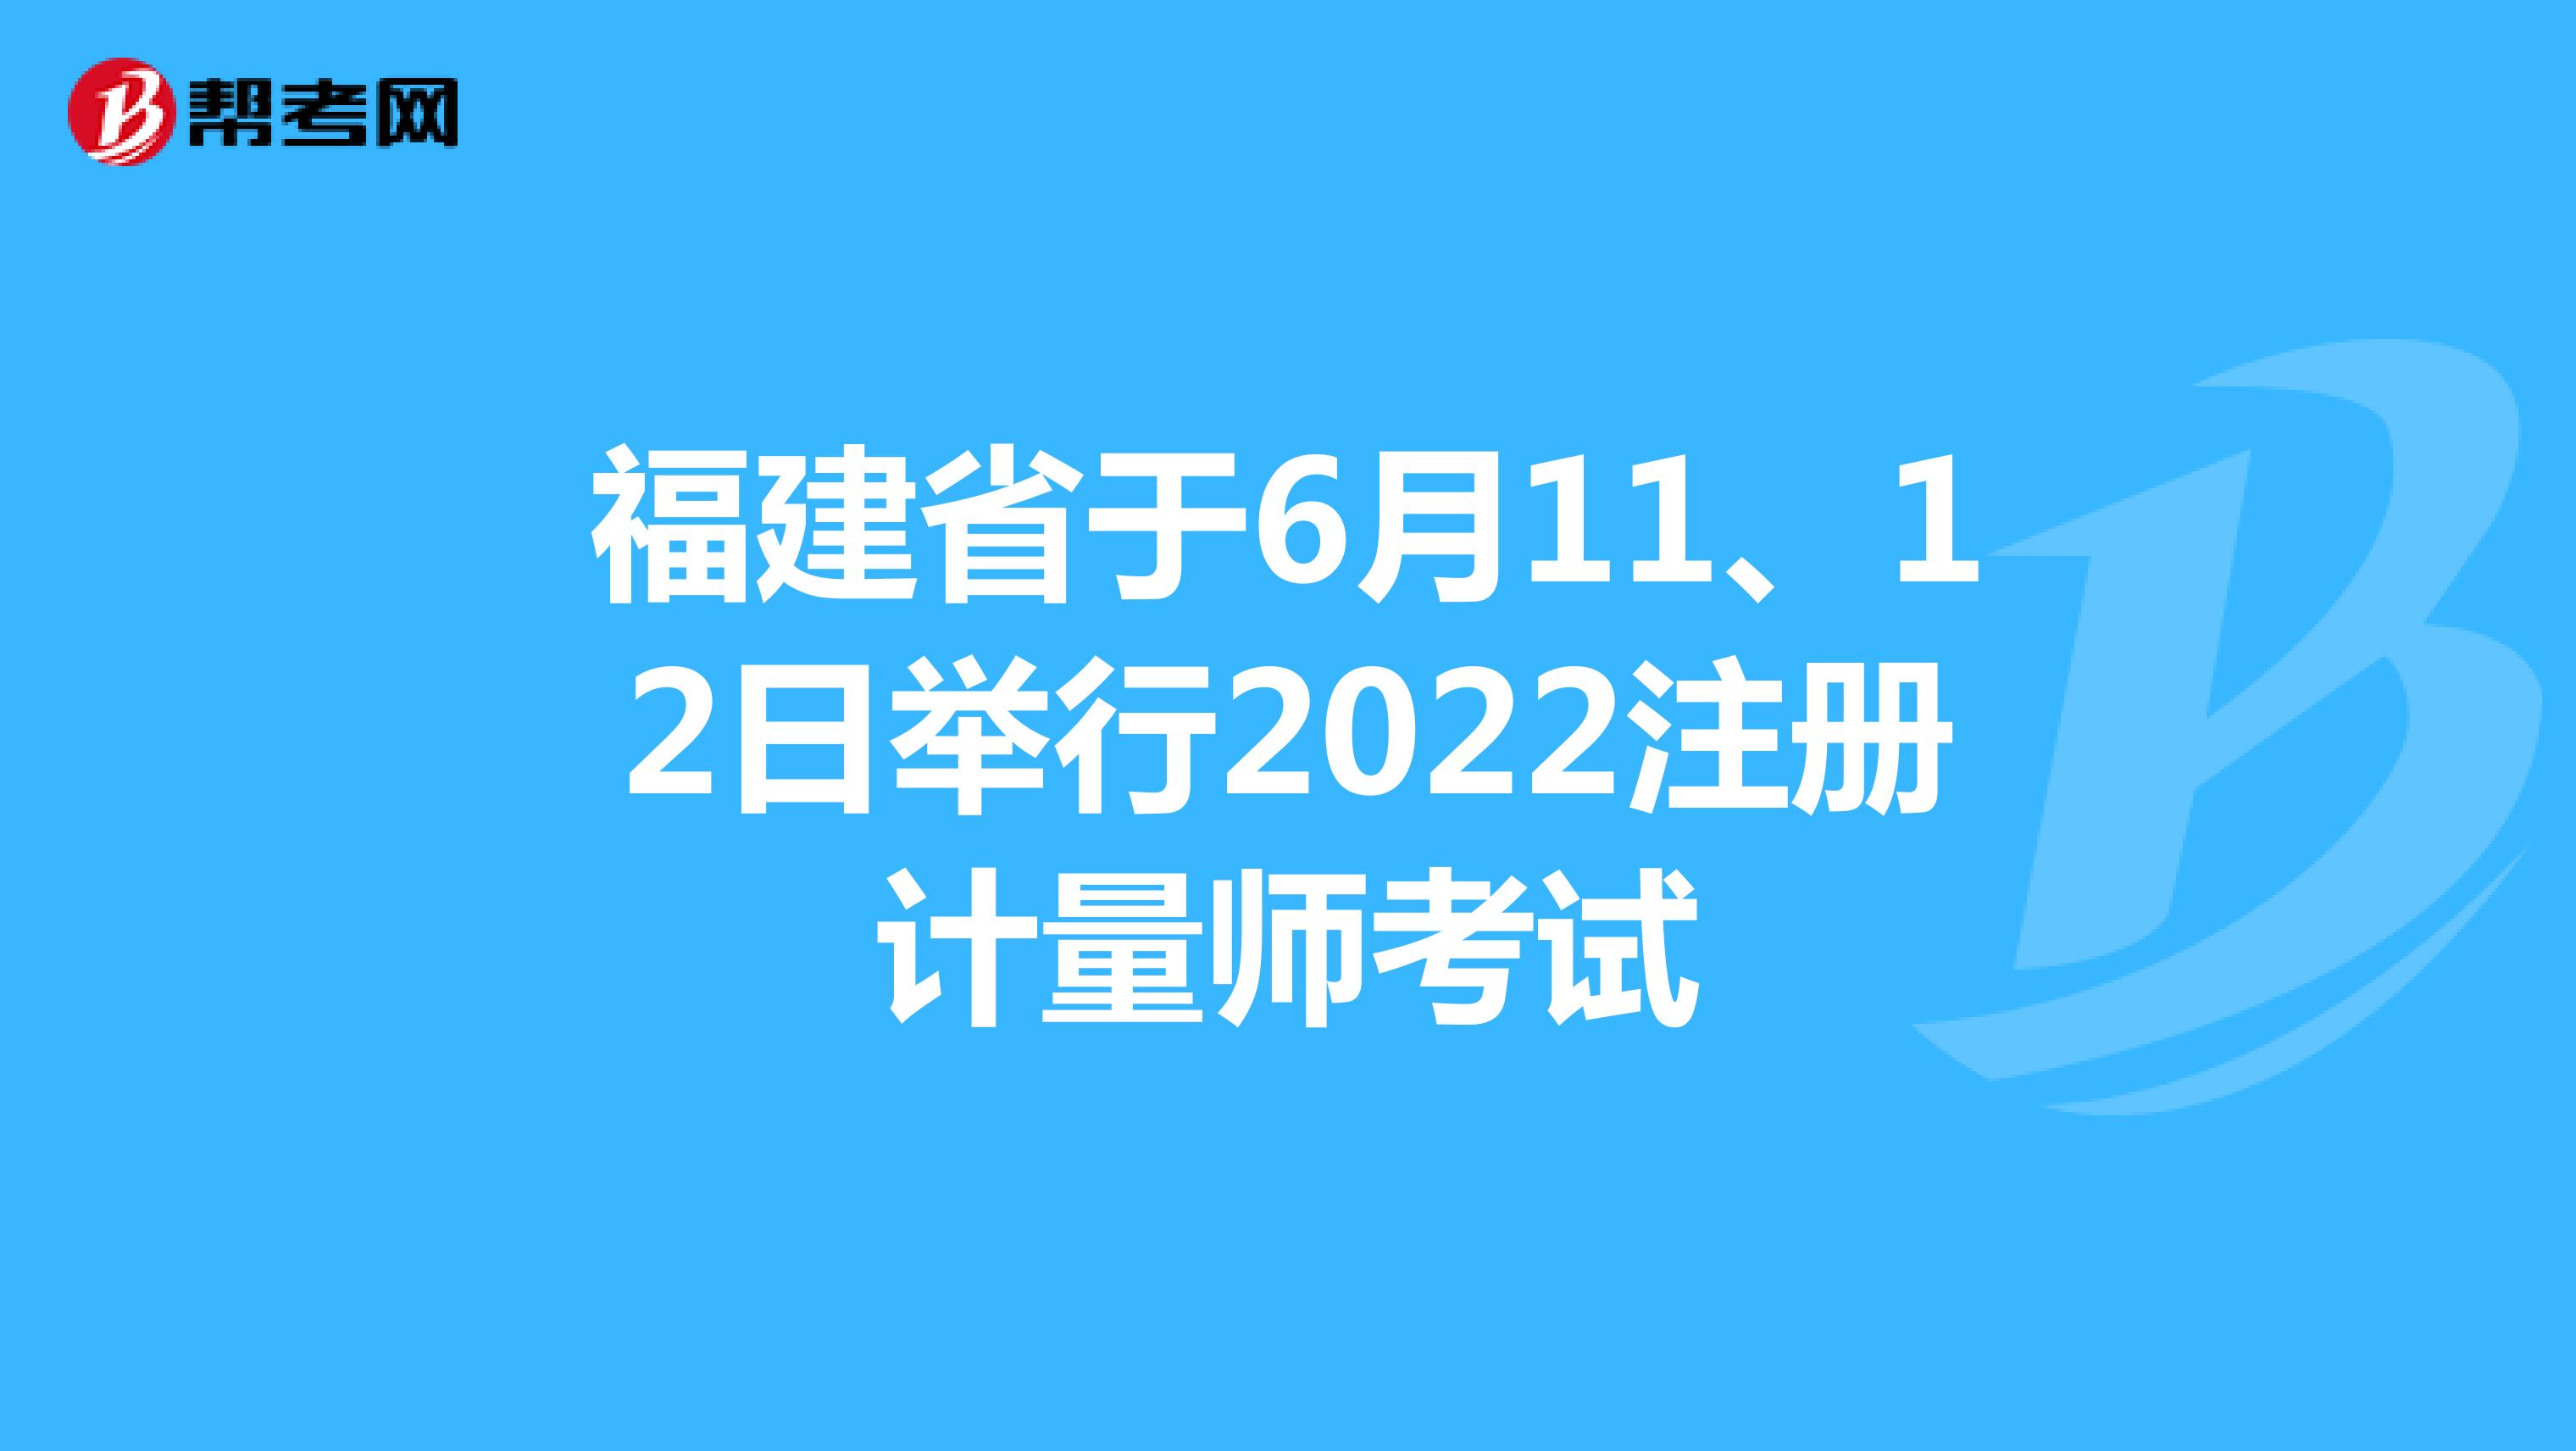 福建省于6月11、12日举行2022注册计量师考试